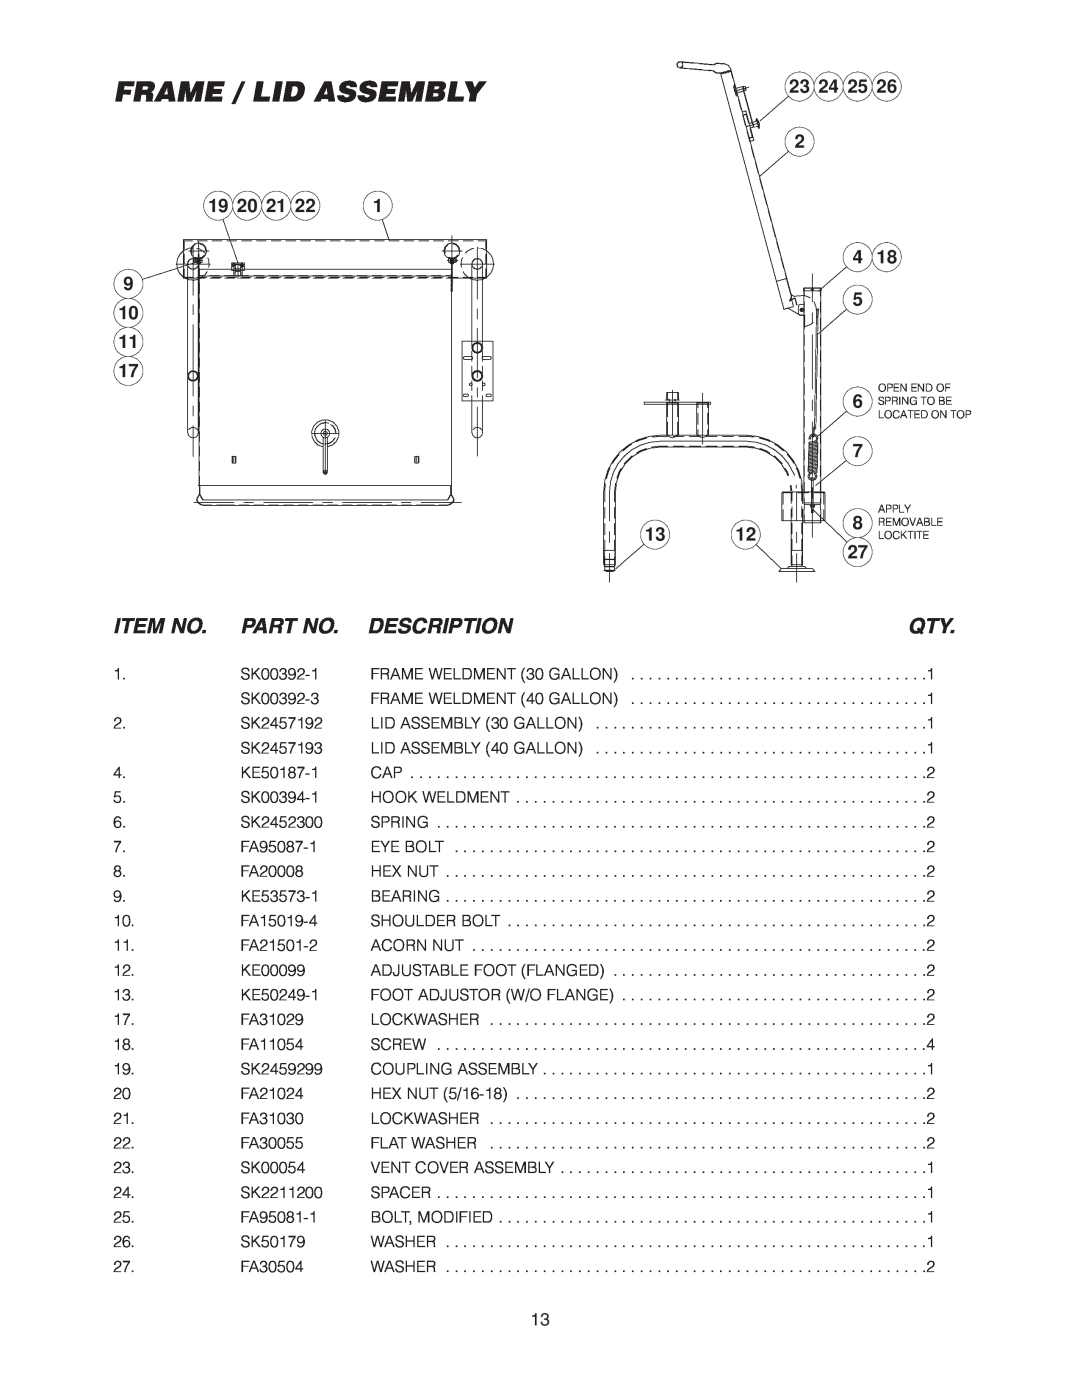 Cleveland Range SEL-30-T1, SEL-40-T1 manual Frame / Lid Assembly, Item No, Description, 23 24 25, 19 20 21 